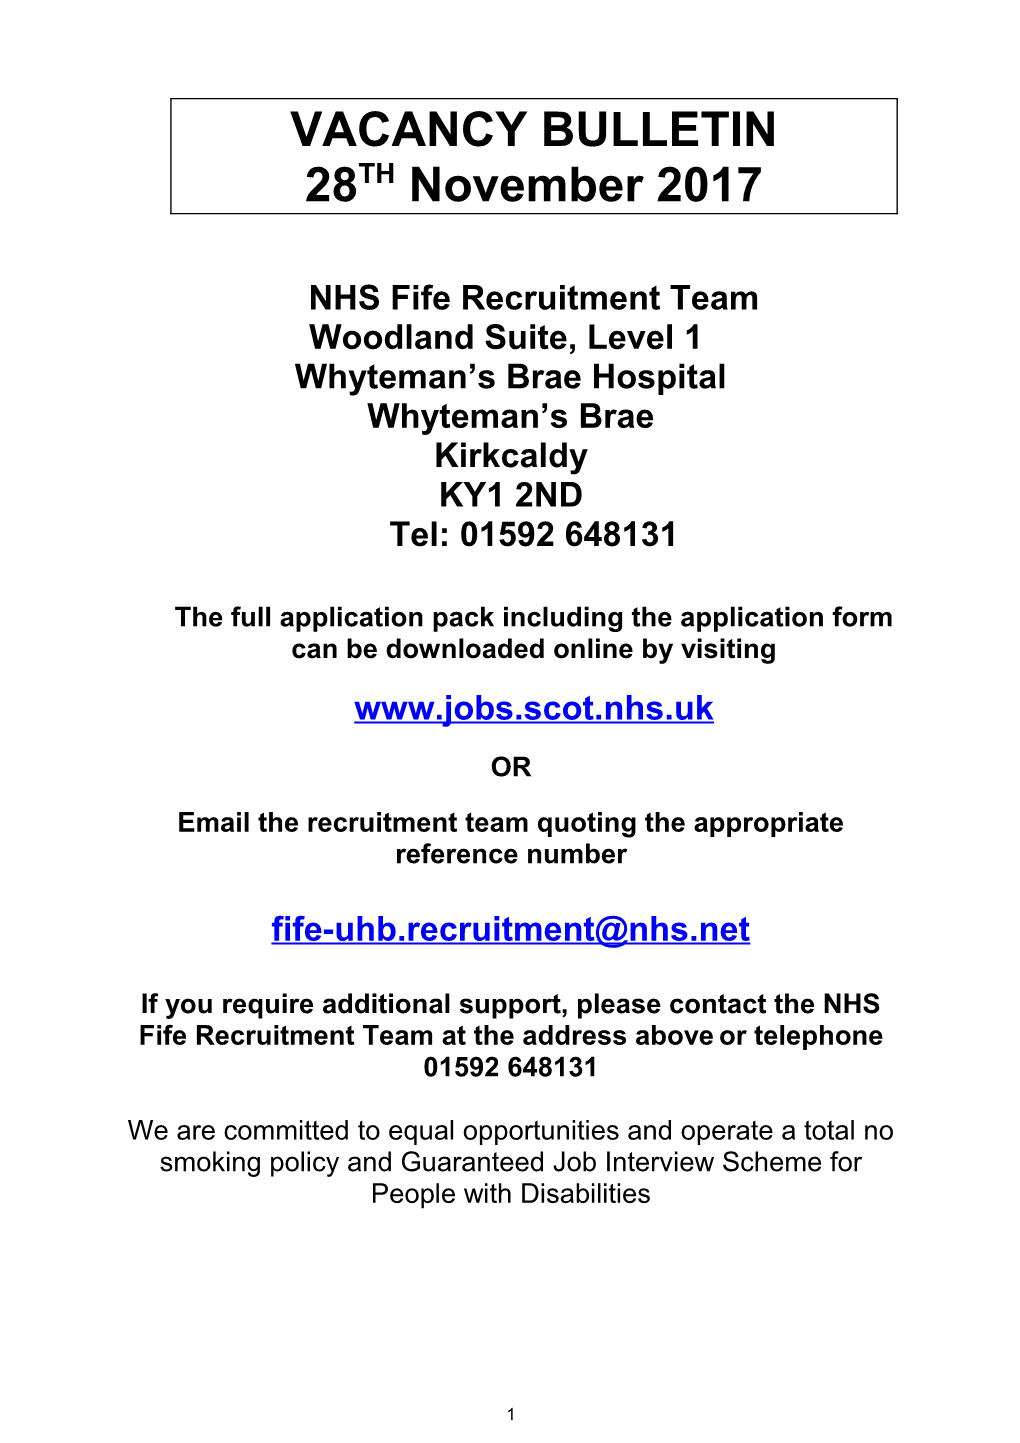 NHS Fife Recruitment Team